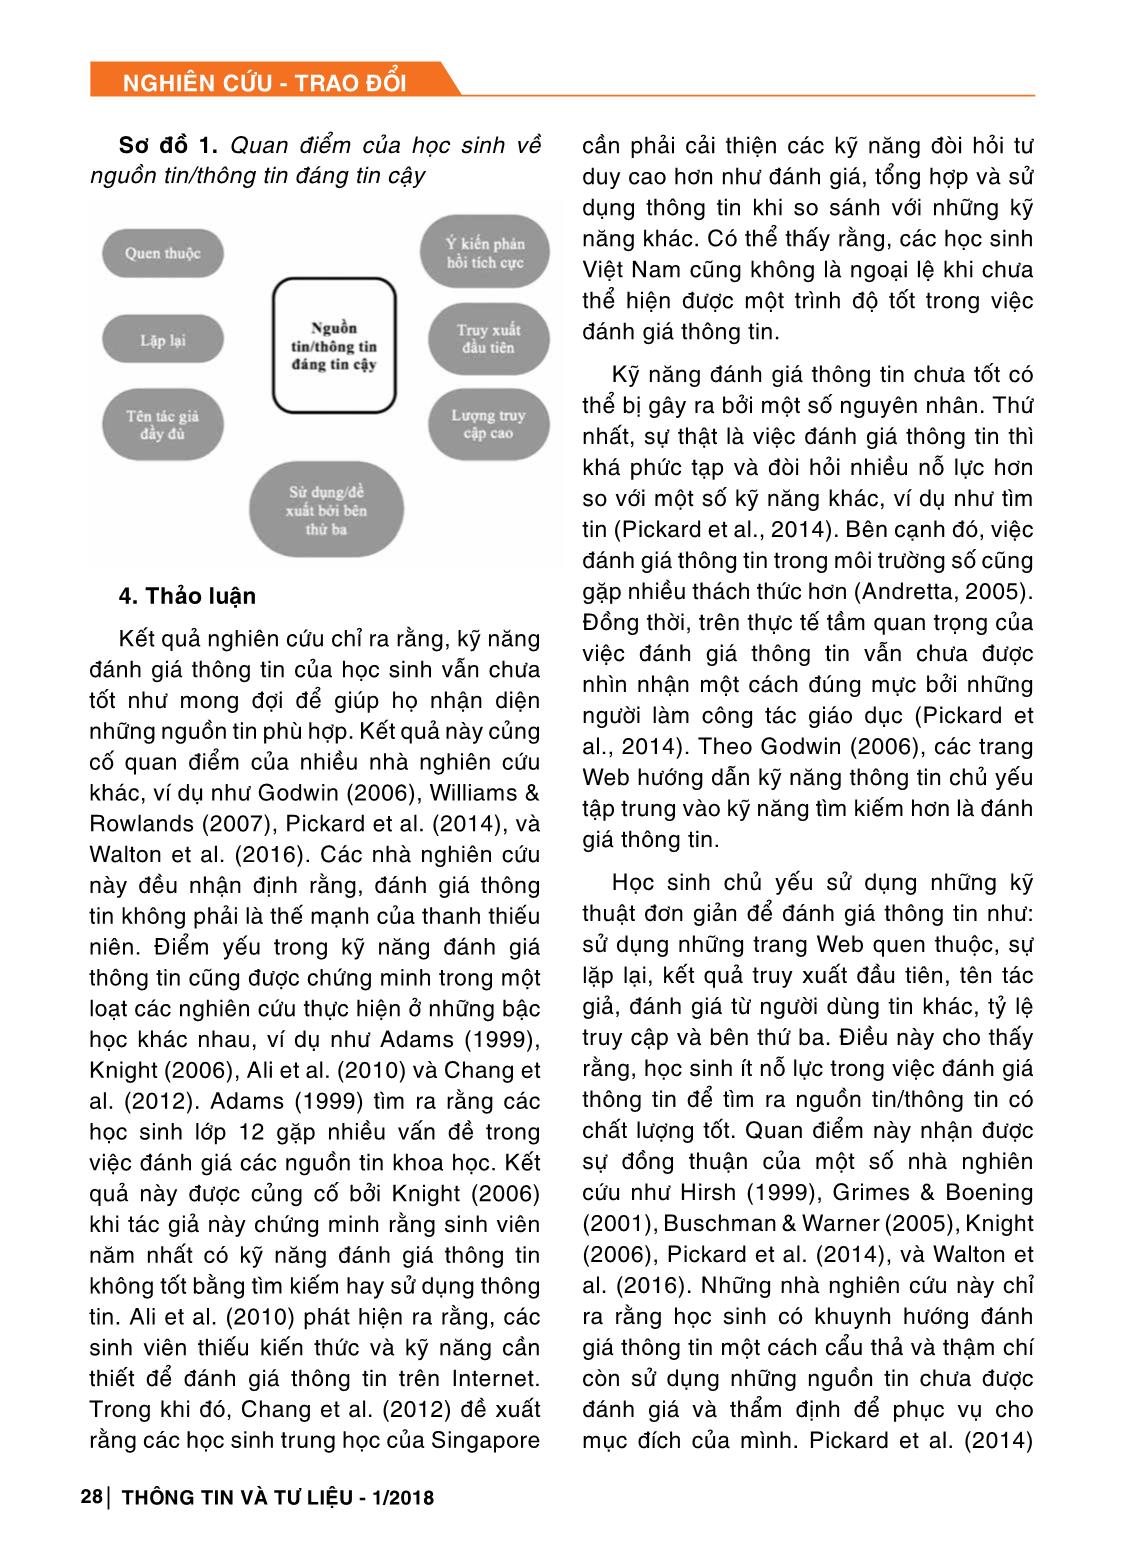 Kỹ năng đánh giá thông tin của thanh thiếu niên Việt Nam trang 6